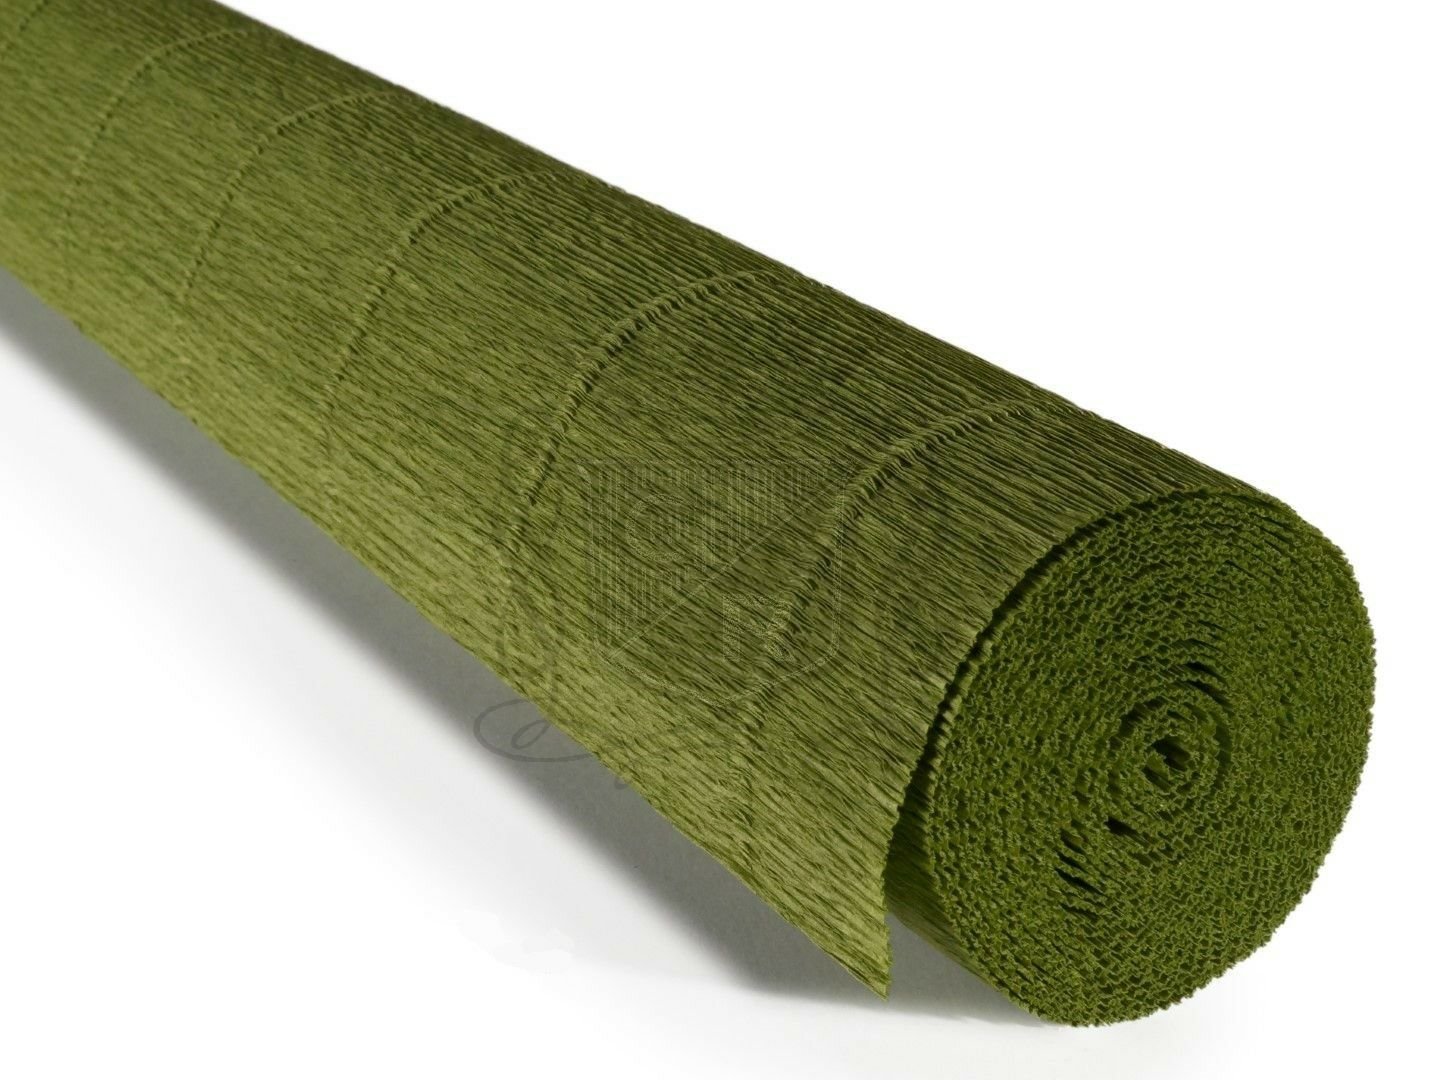 İtalyan Krapon Kağıdı No:622 - Zeytin Yeşili - Olive Green 180g 50X250 cm